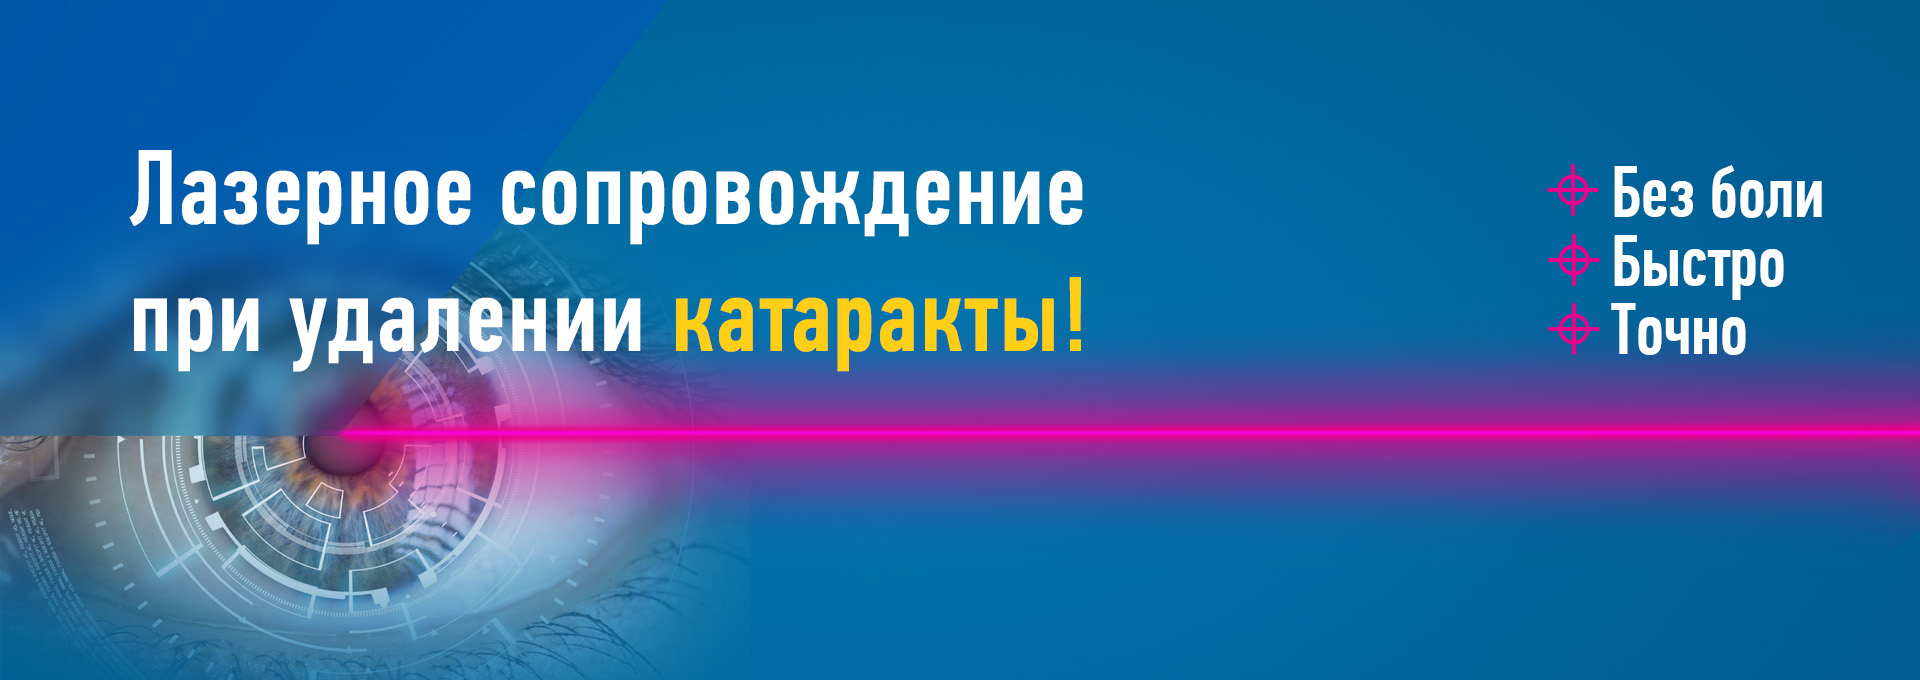 Новосибирск клиника федорова лечение глаз